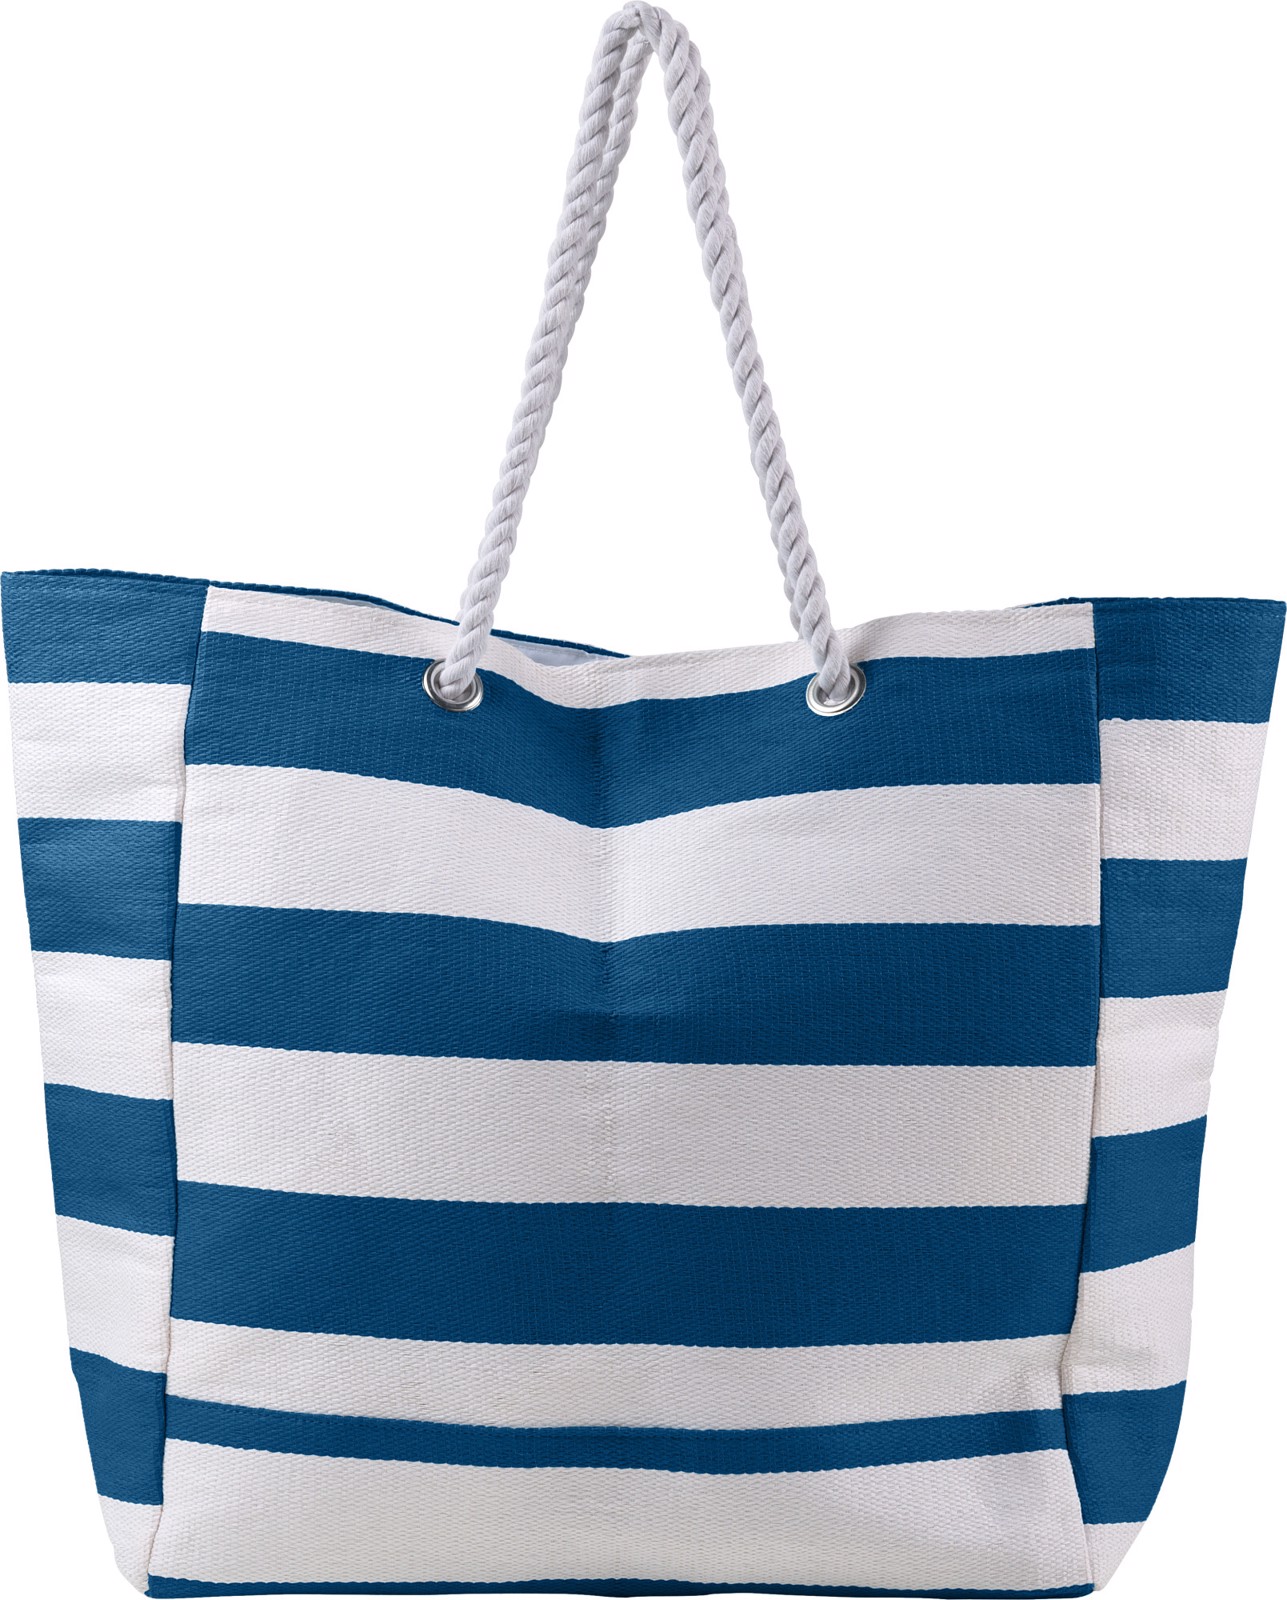 Cotton beach bag - Blue